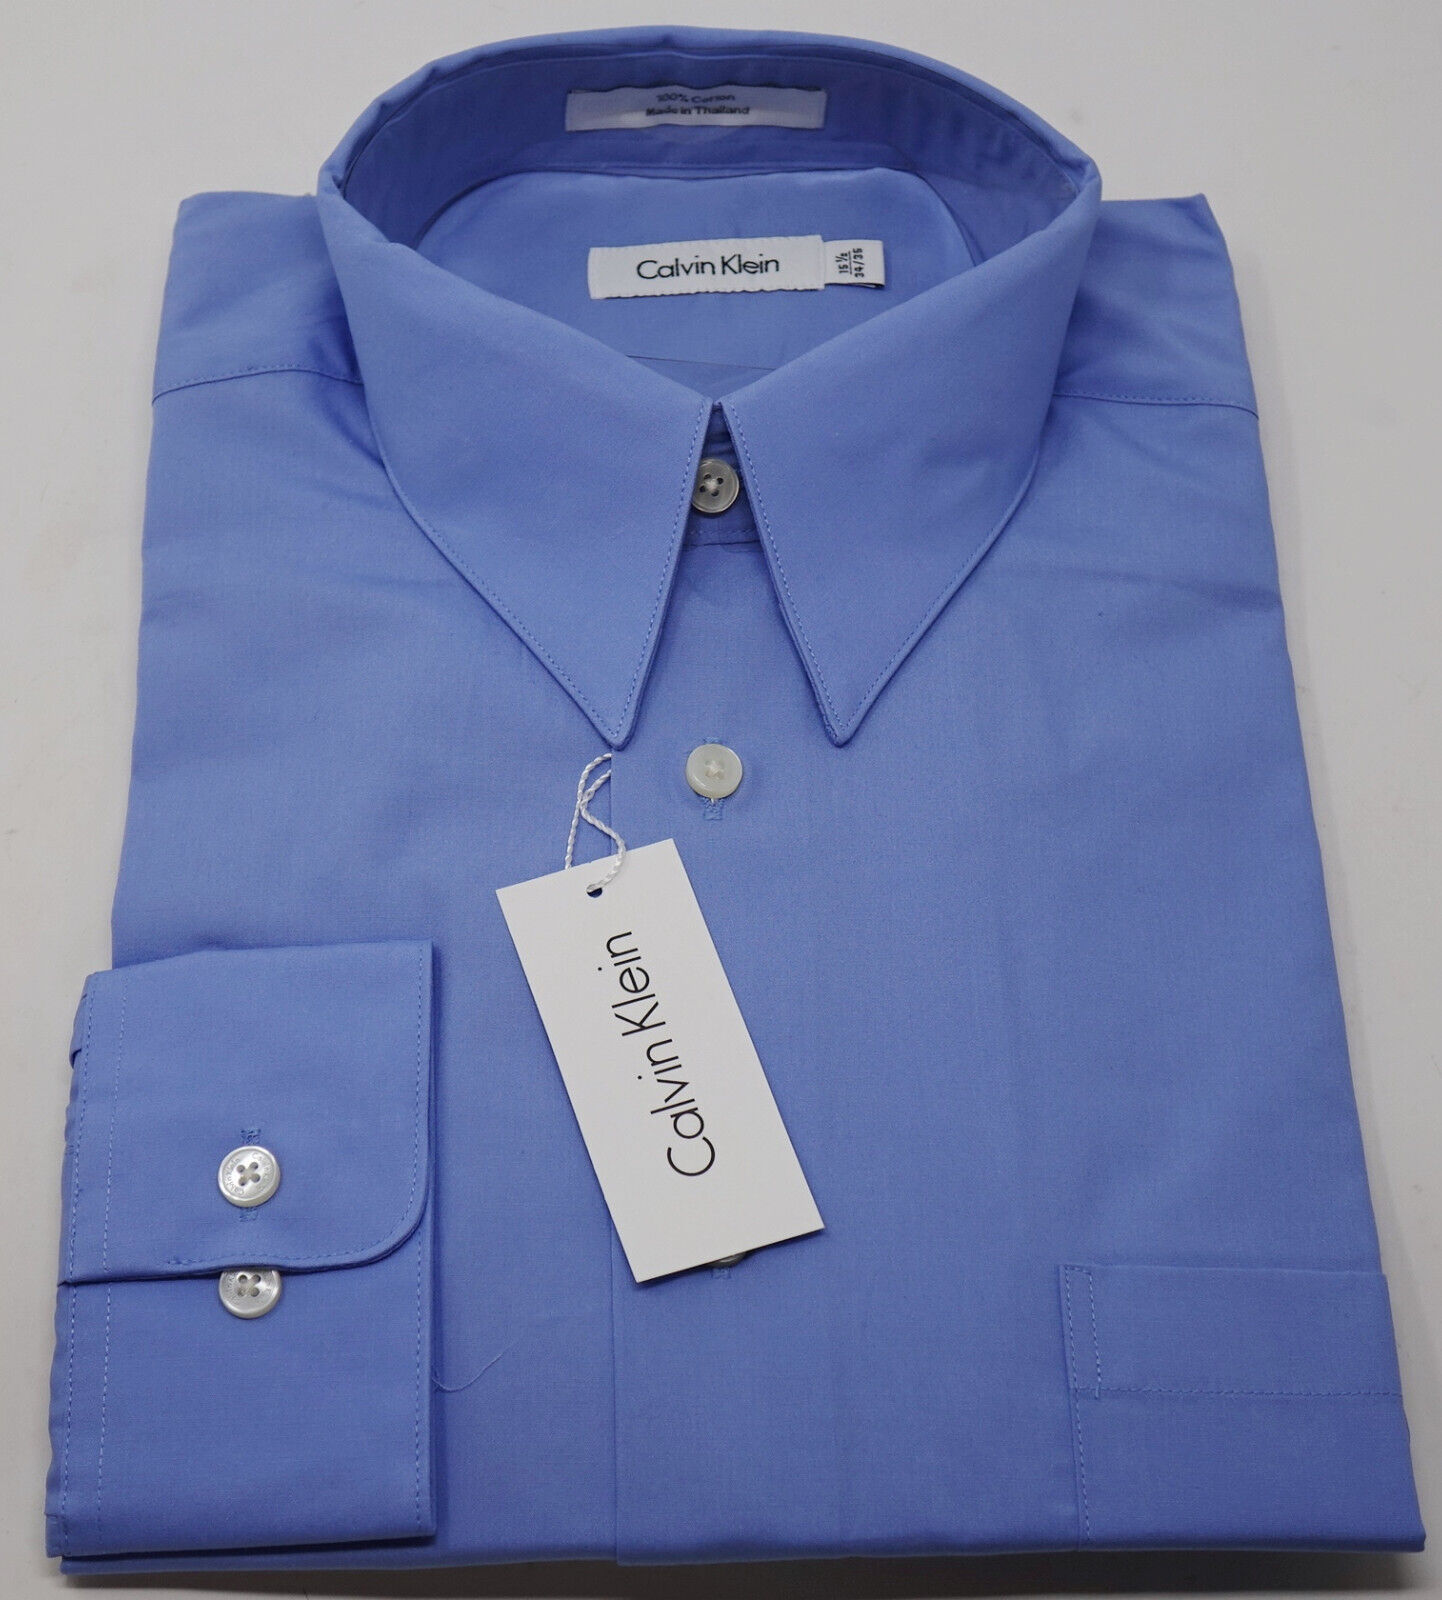 NEW Calvin Klein Men's Blue Button Up Dress Shirt Sz 15.5 - 34/35